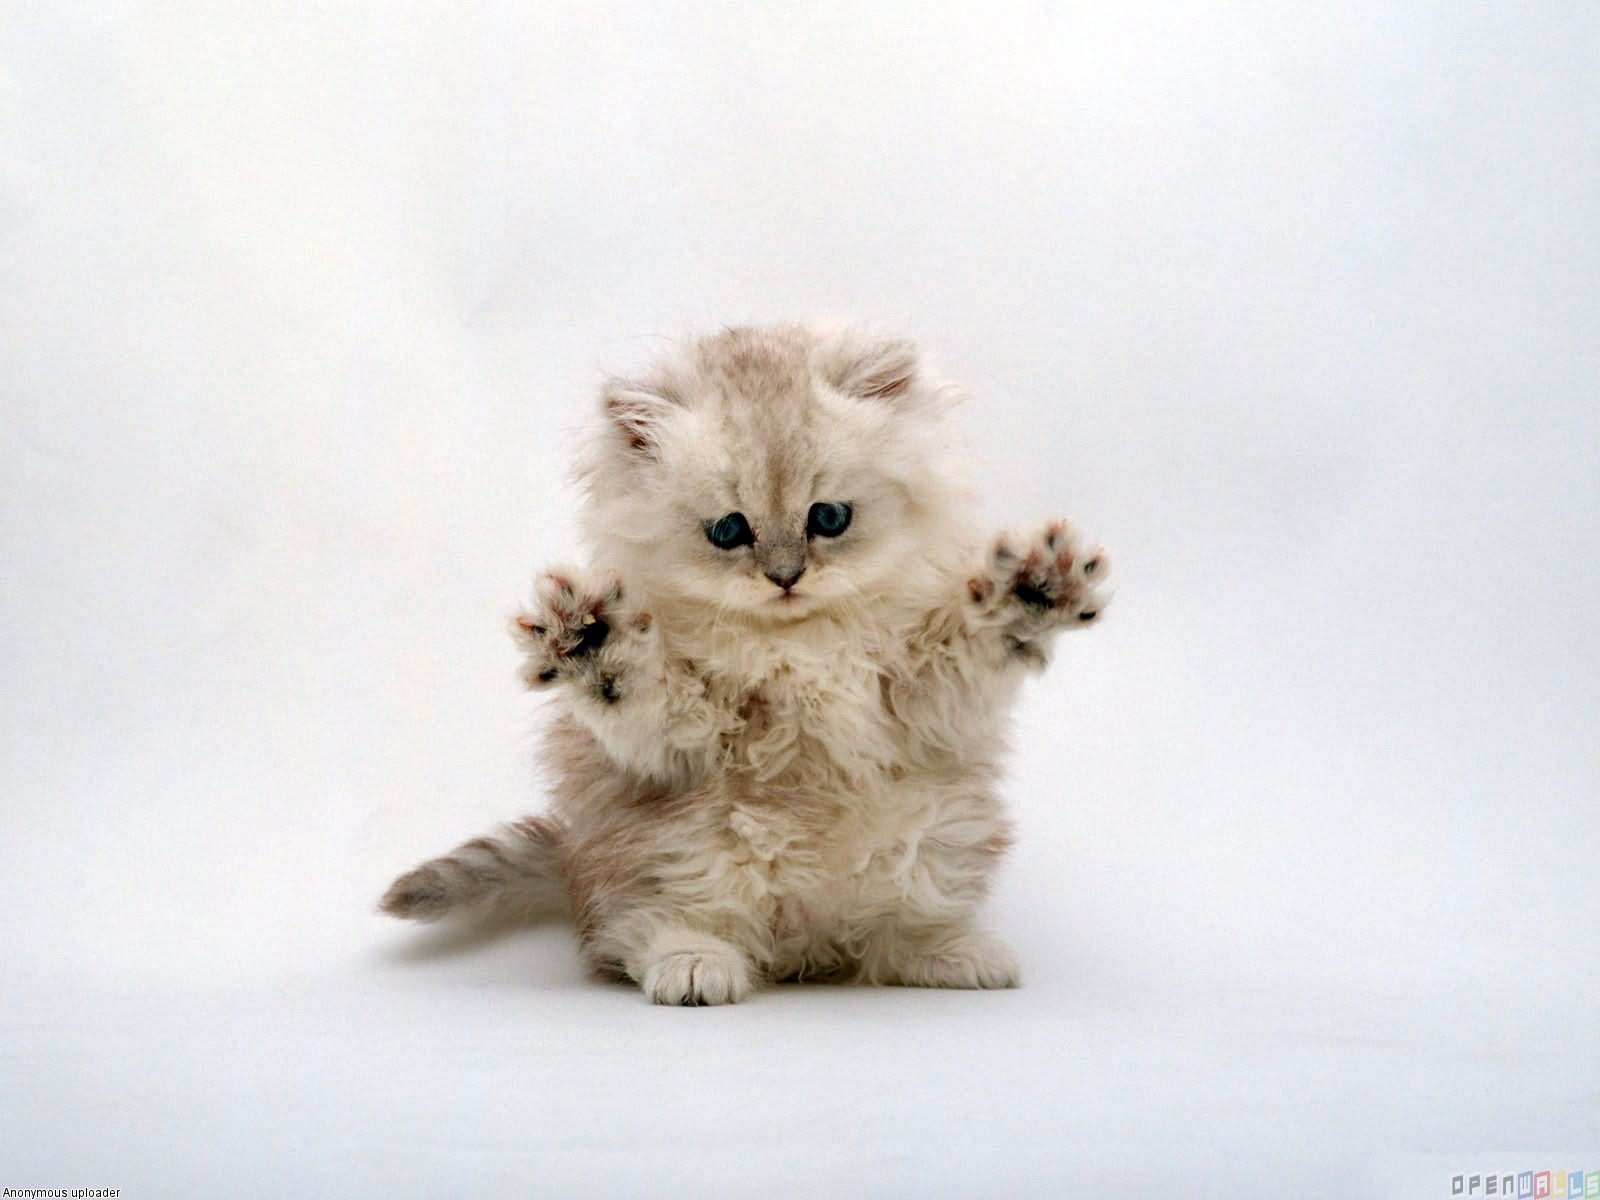 Cute Little Munchkin Kitten Standing Up